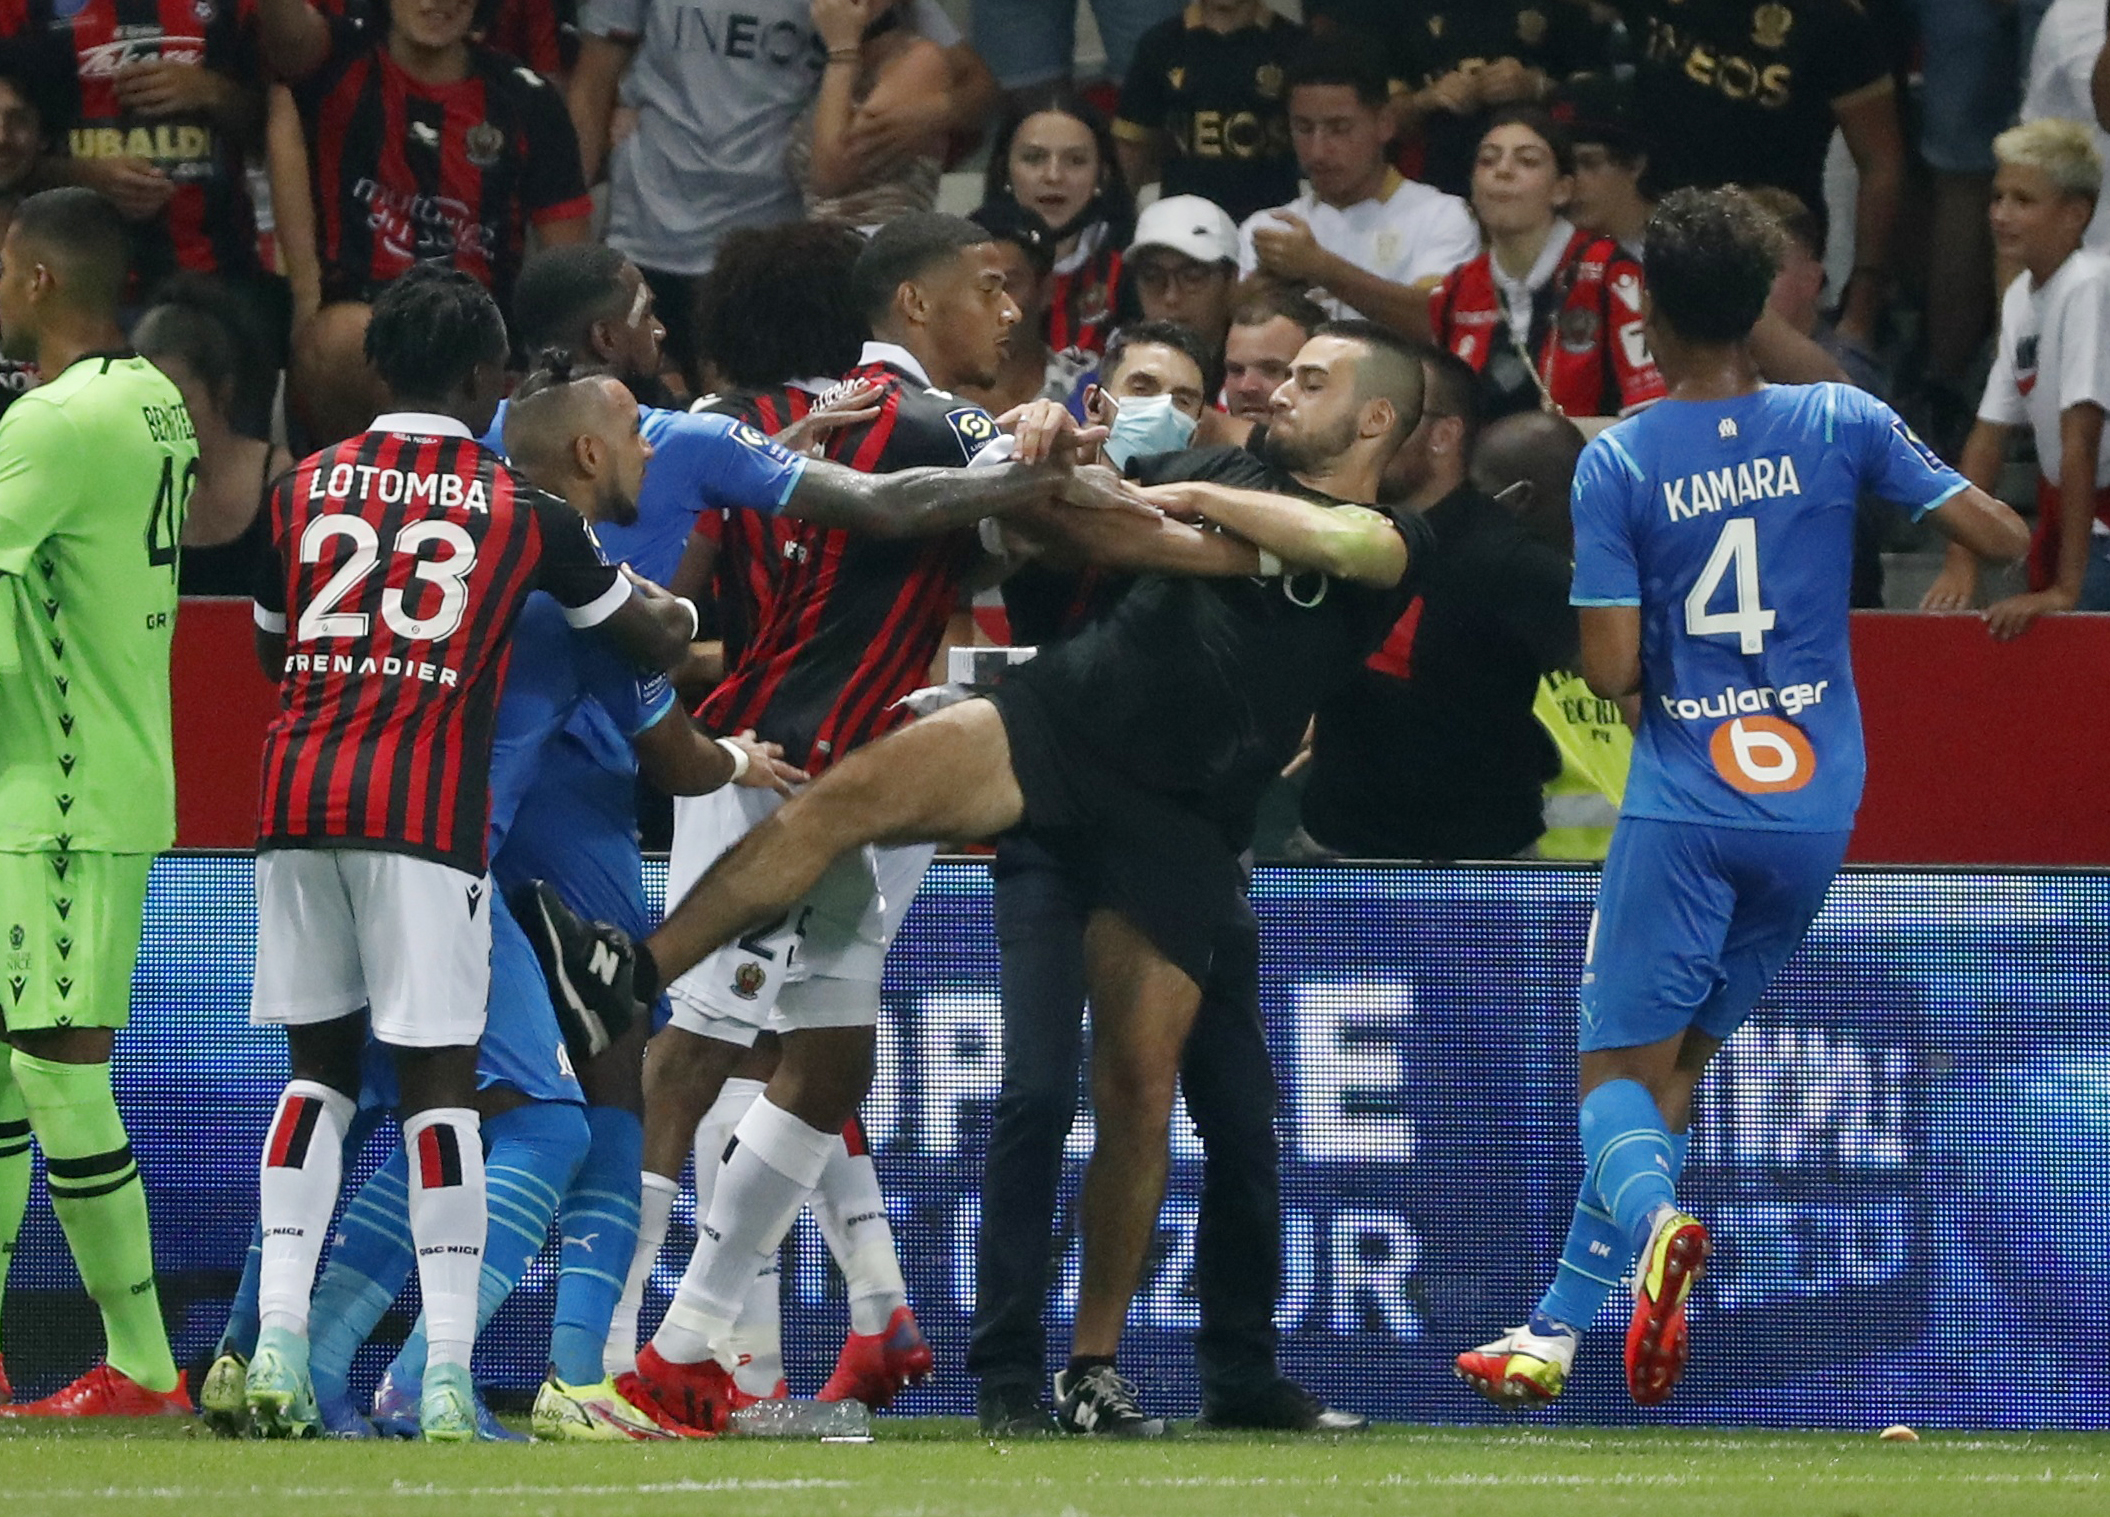 Aficionados del Niza saltan al campo para agredir a los jugadores del Marsella